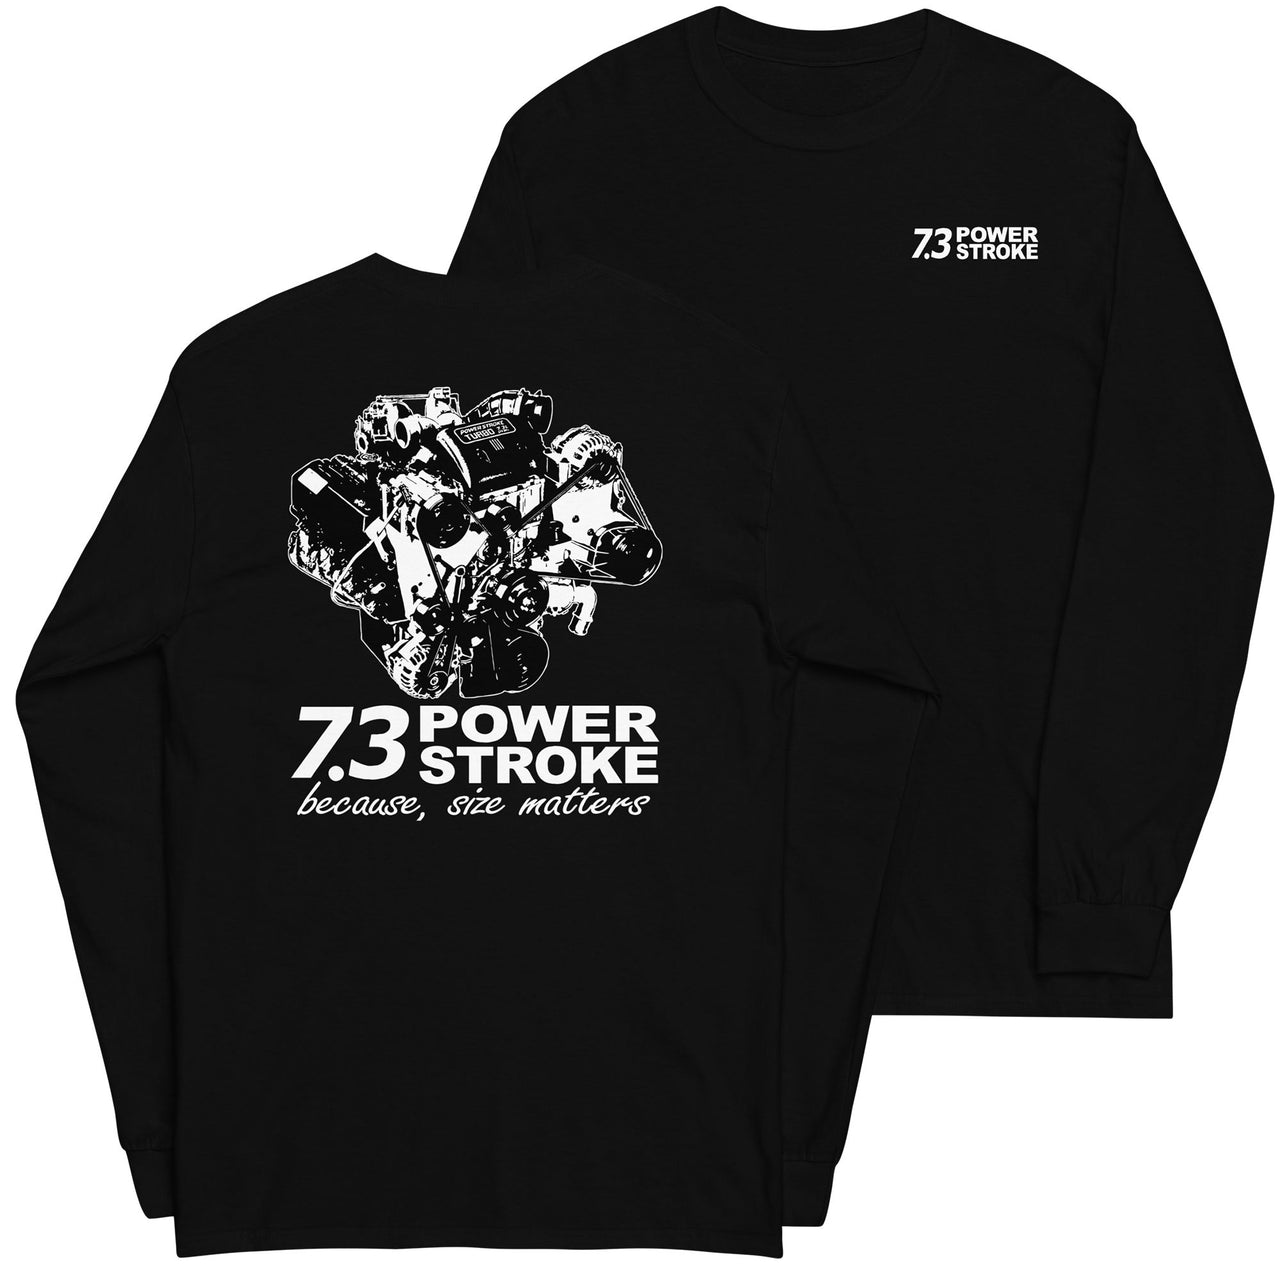 7.3 Power Stroke Size Matters Long Sleeve T-Shirt in black